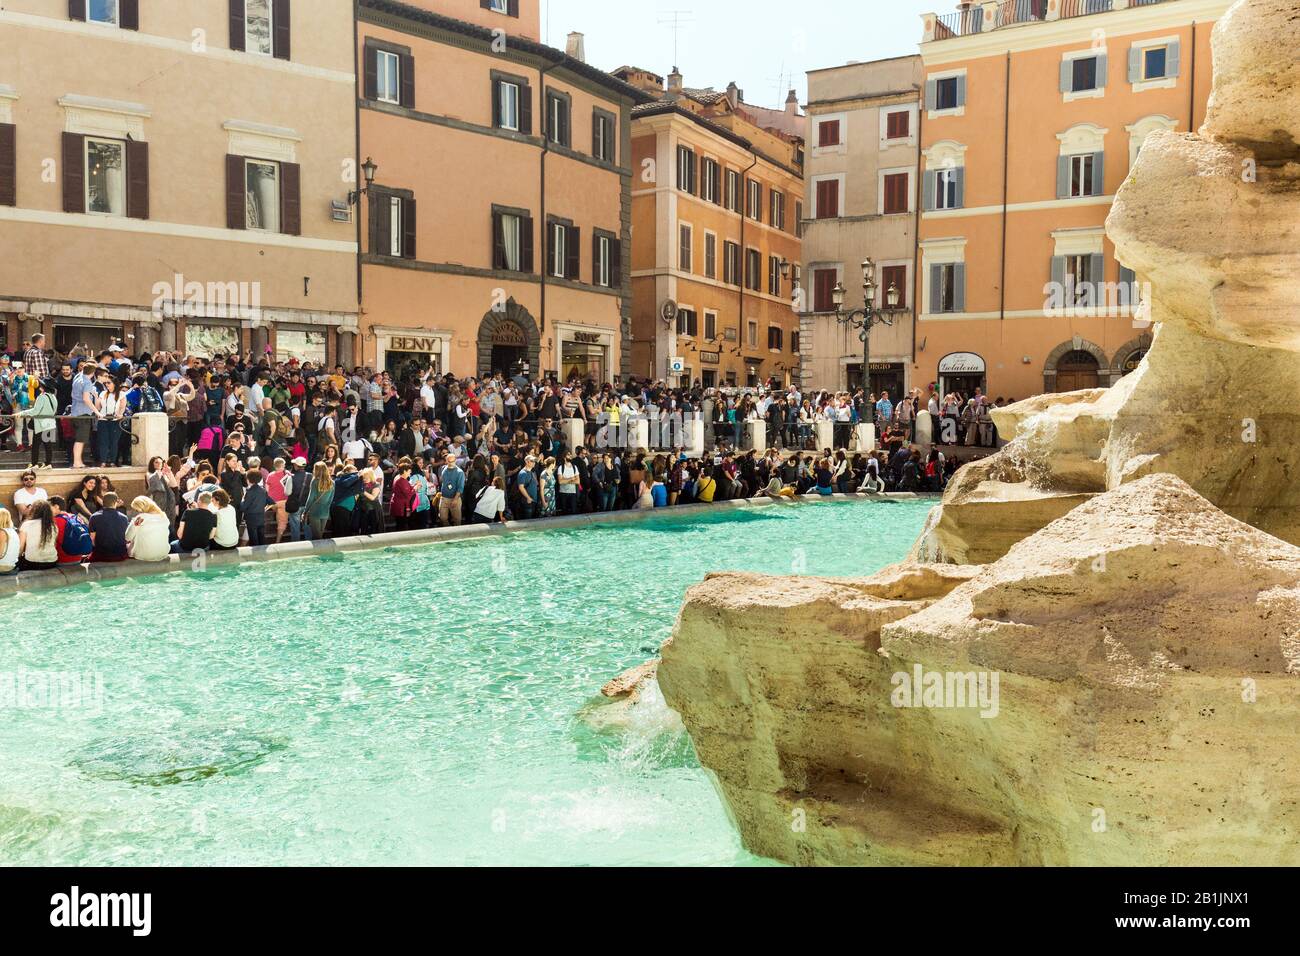 Turisti in visita alla Fontana di Trevi a Roma, Italia, 2017 Foto Stock